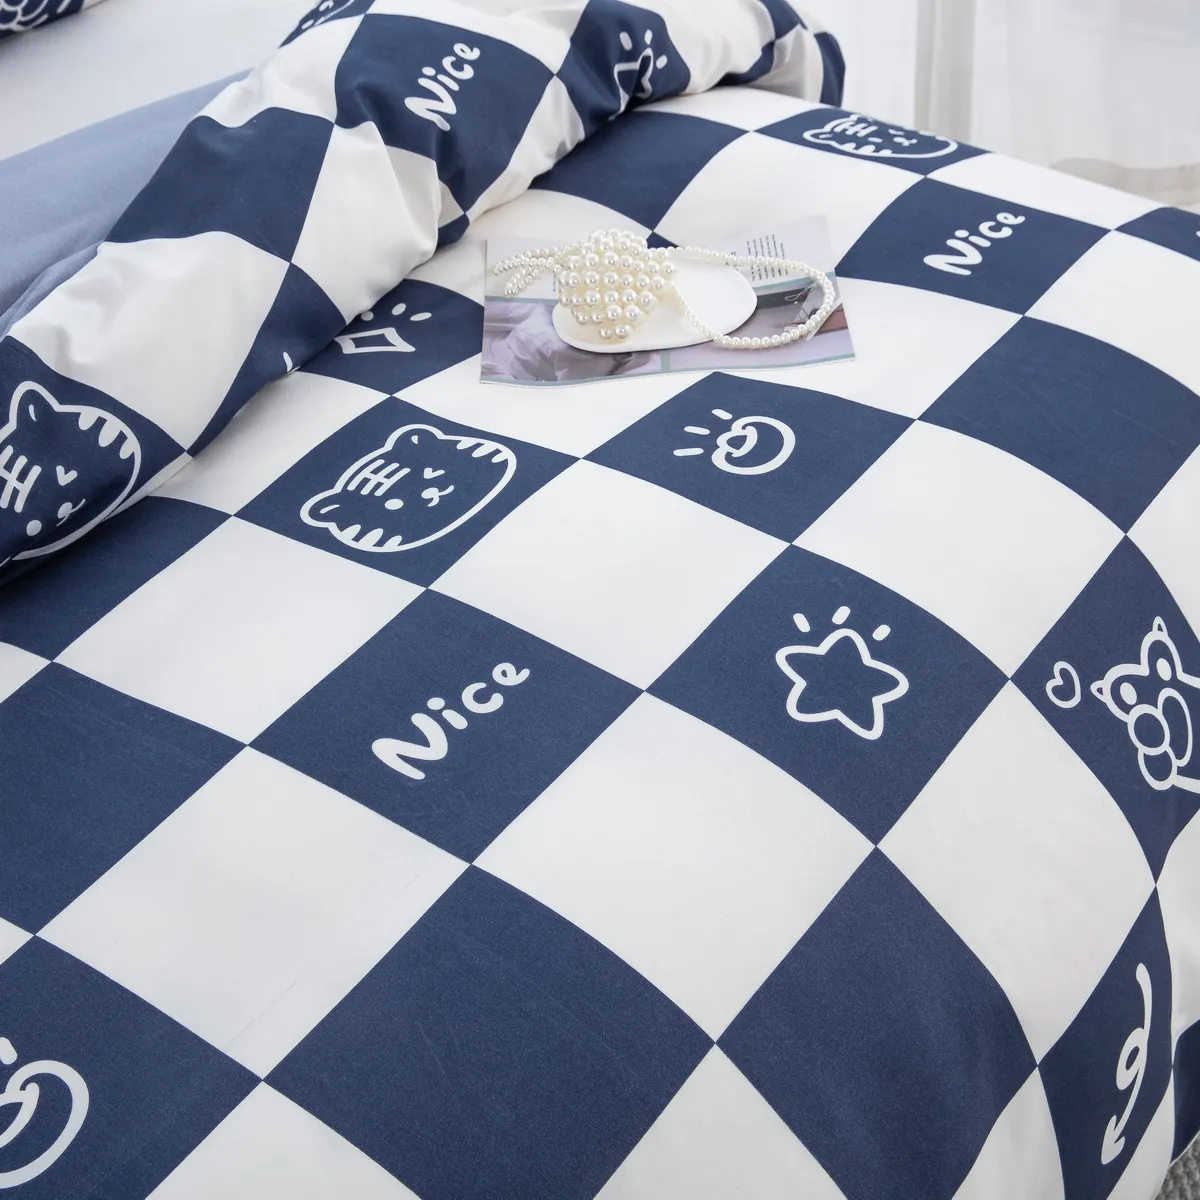 2/3pcs Juego de ropa de cama moderno y minimalista con patrón geométrico de dibujos animados, incluye funda nórdica y fundas de almohada azul blanco big image 1